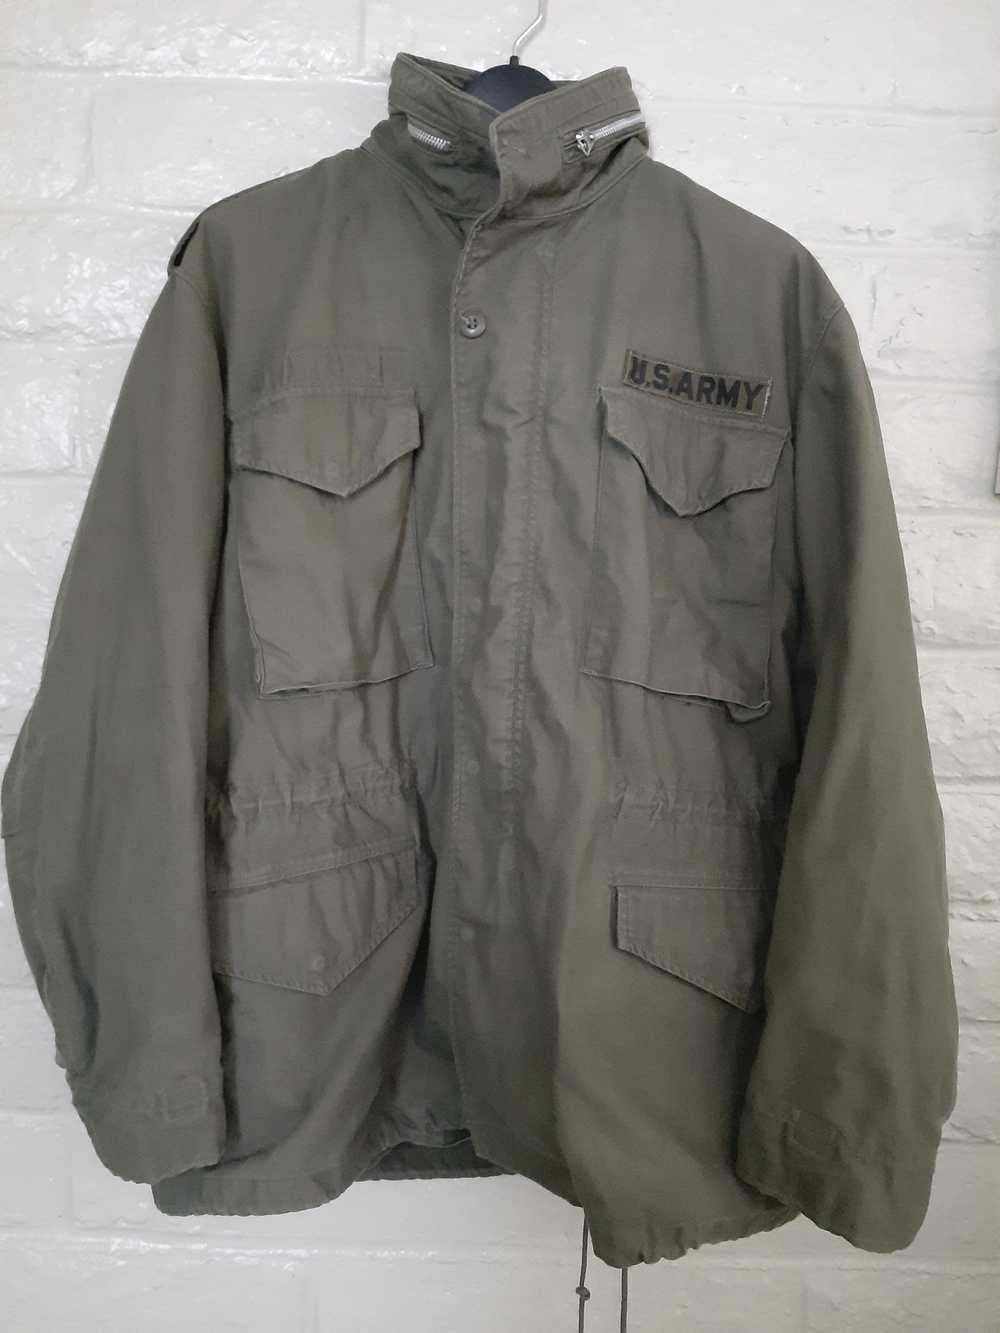 Vintage Vintage Military Jacket sz Medium Regular… - image 2